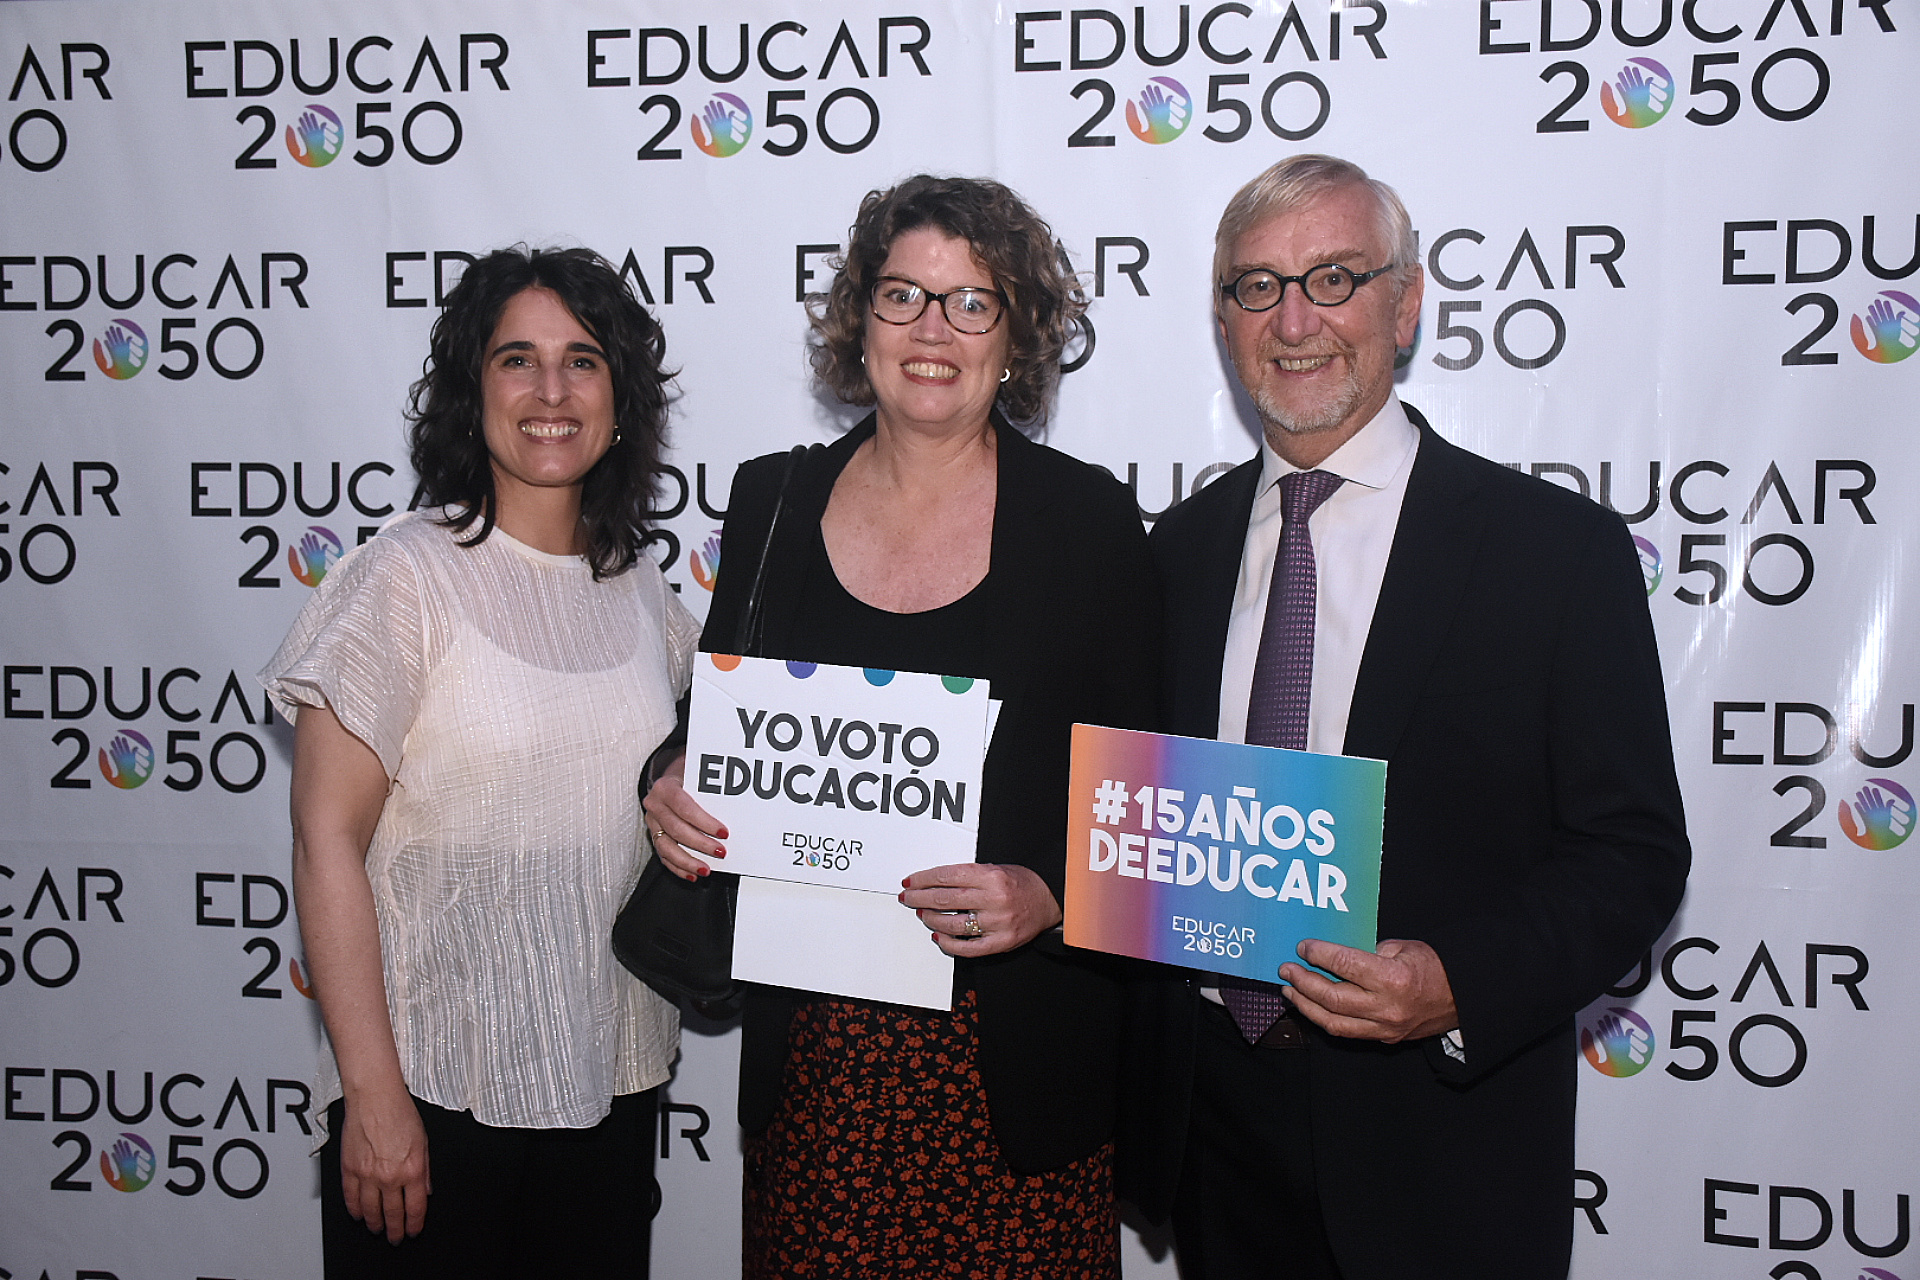 Los representantes de Educar 2050 junto a la especialista en educación de Unicef Argentina Cora Steimberg